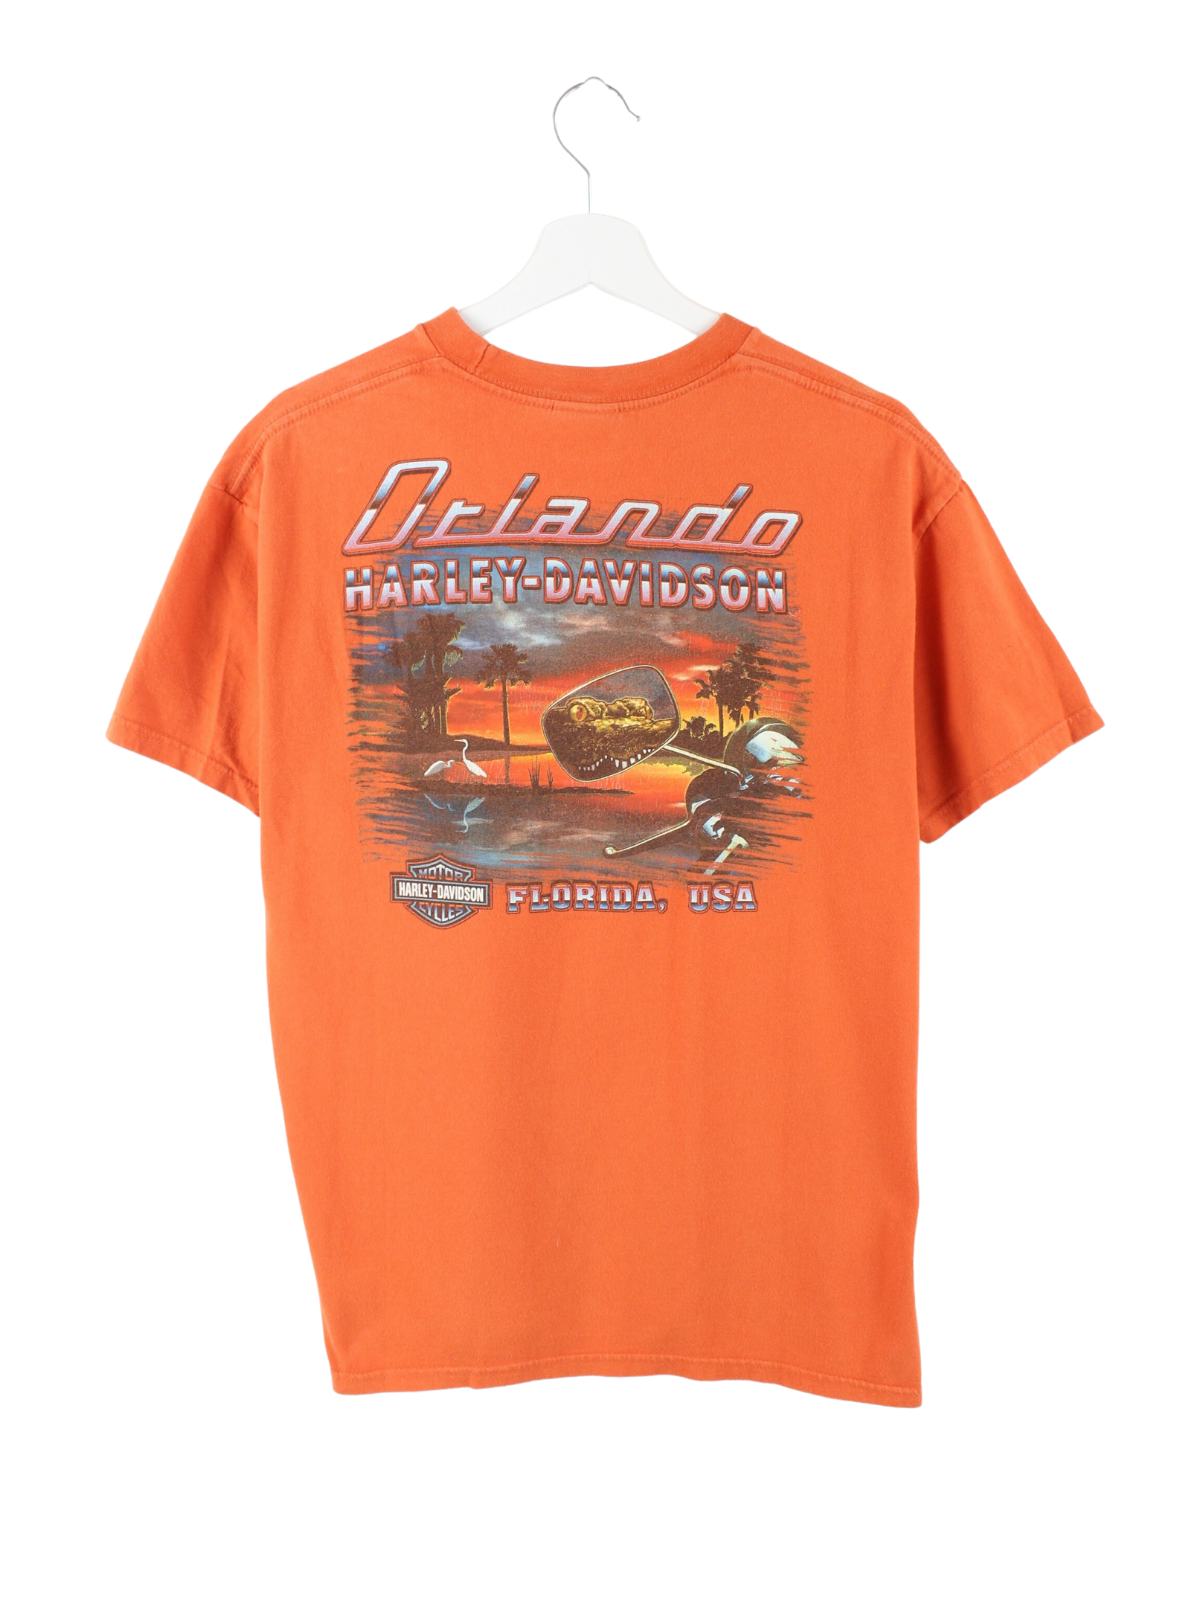 Harley Davidson Florida Print T-Shirt Orange L